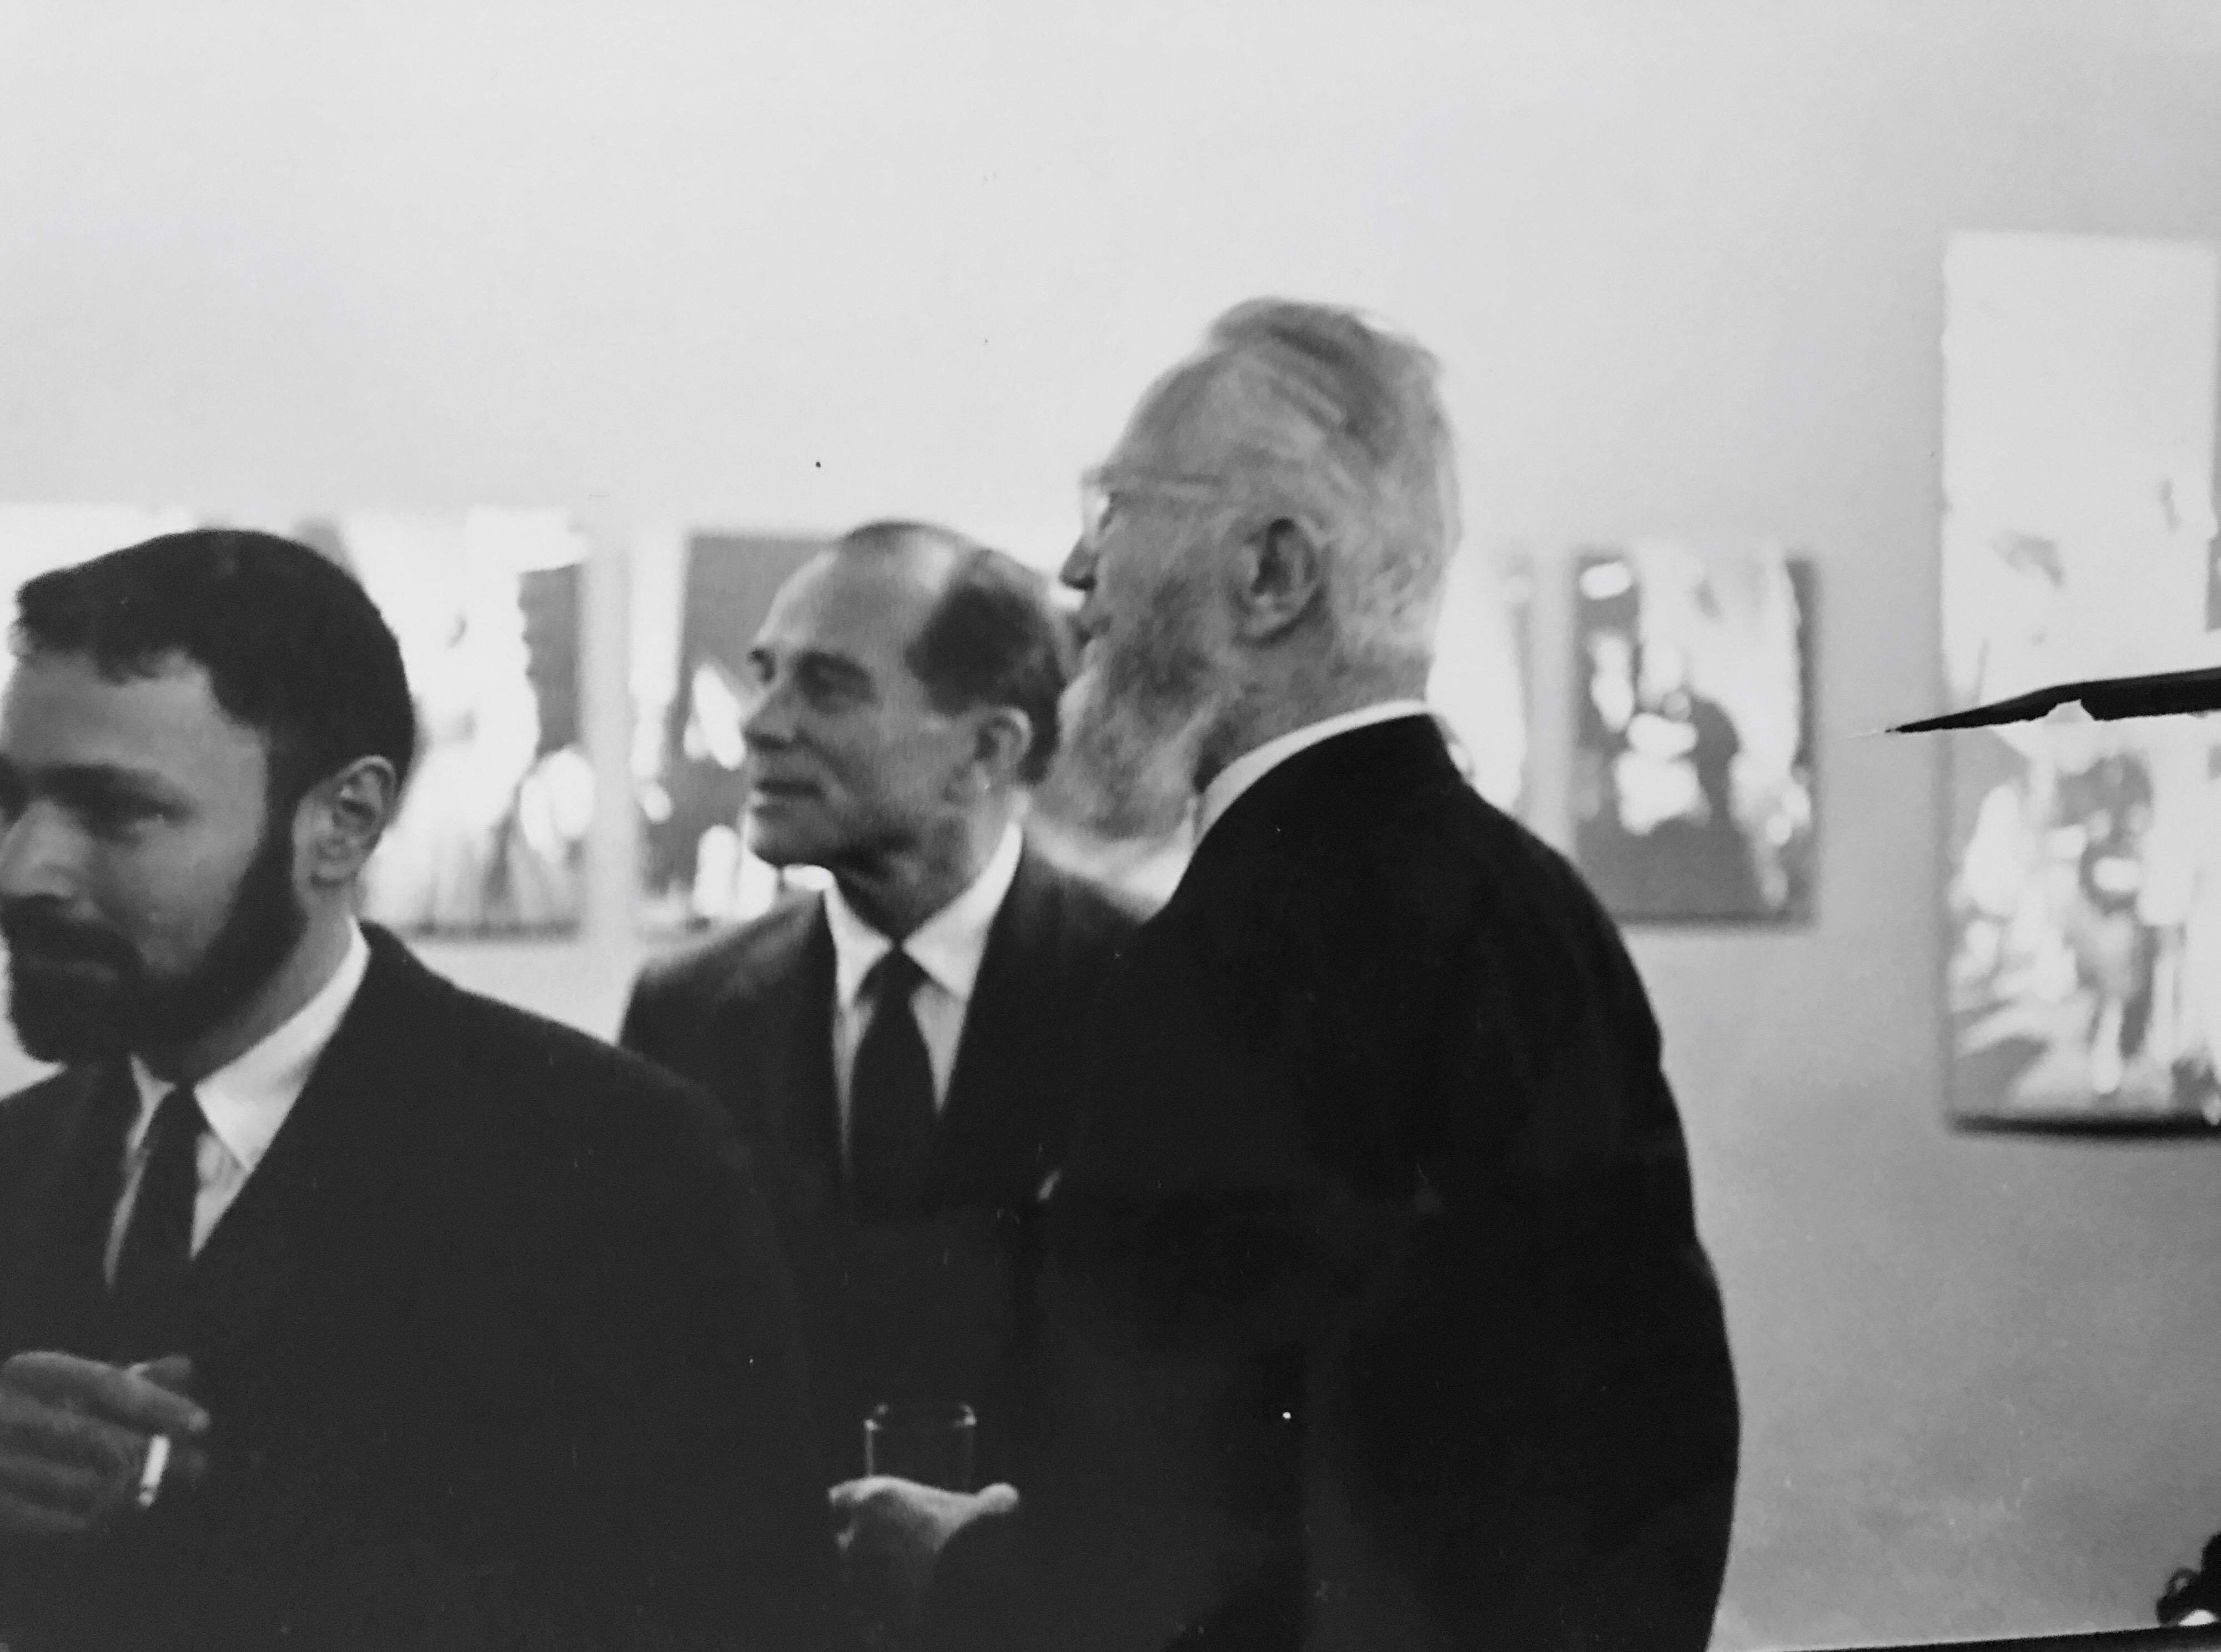 Edward Steichen, John Durniak, Monroe Wheeler et Edward D. Musée d'art moderne le 10 février 1962
Photographe Fred McDarrah 

Sur une période de 50 ans, McDarrah a documenté l'ascension de la Beat Generation, le mouvement artistique postmoderne de